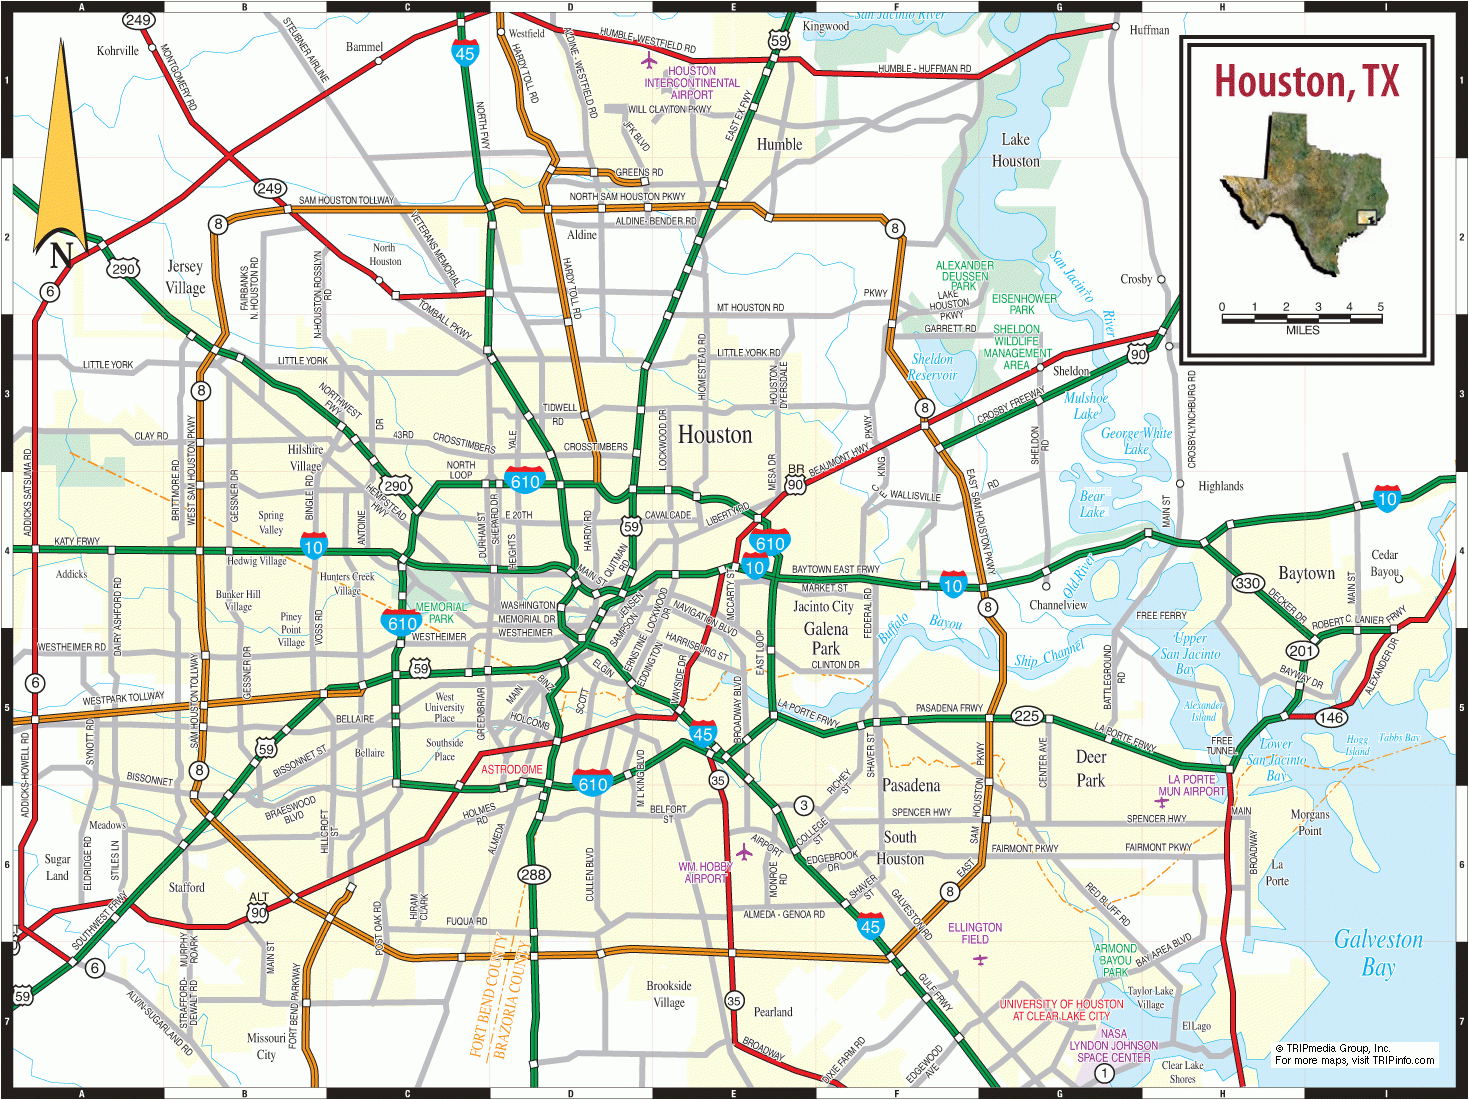 Houston Texas Map Google - Google Maps Houston Texas